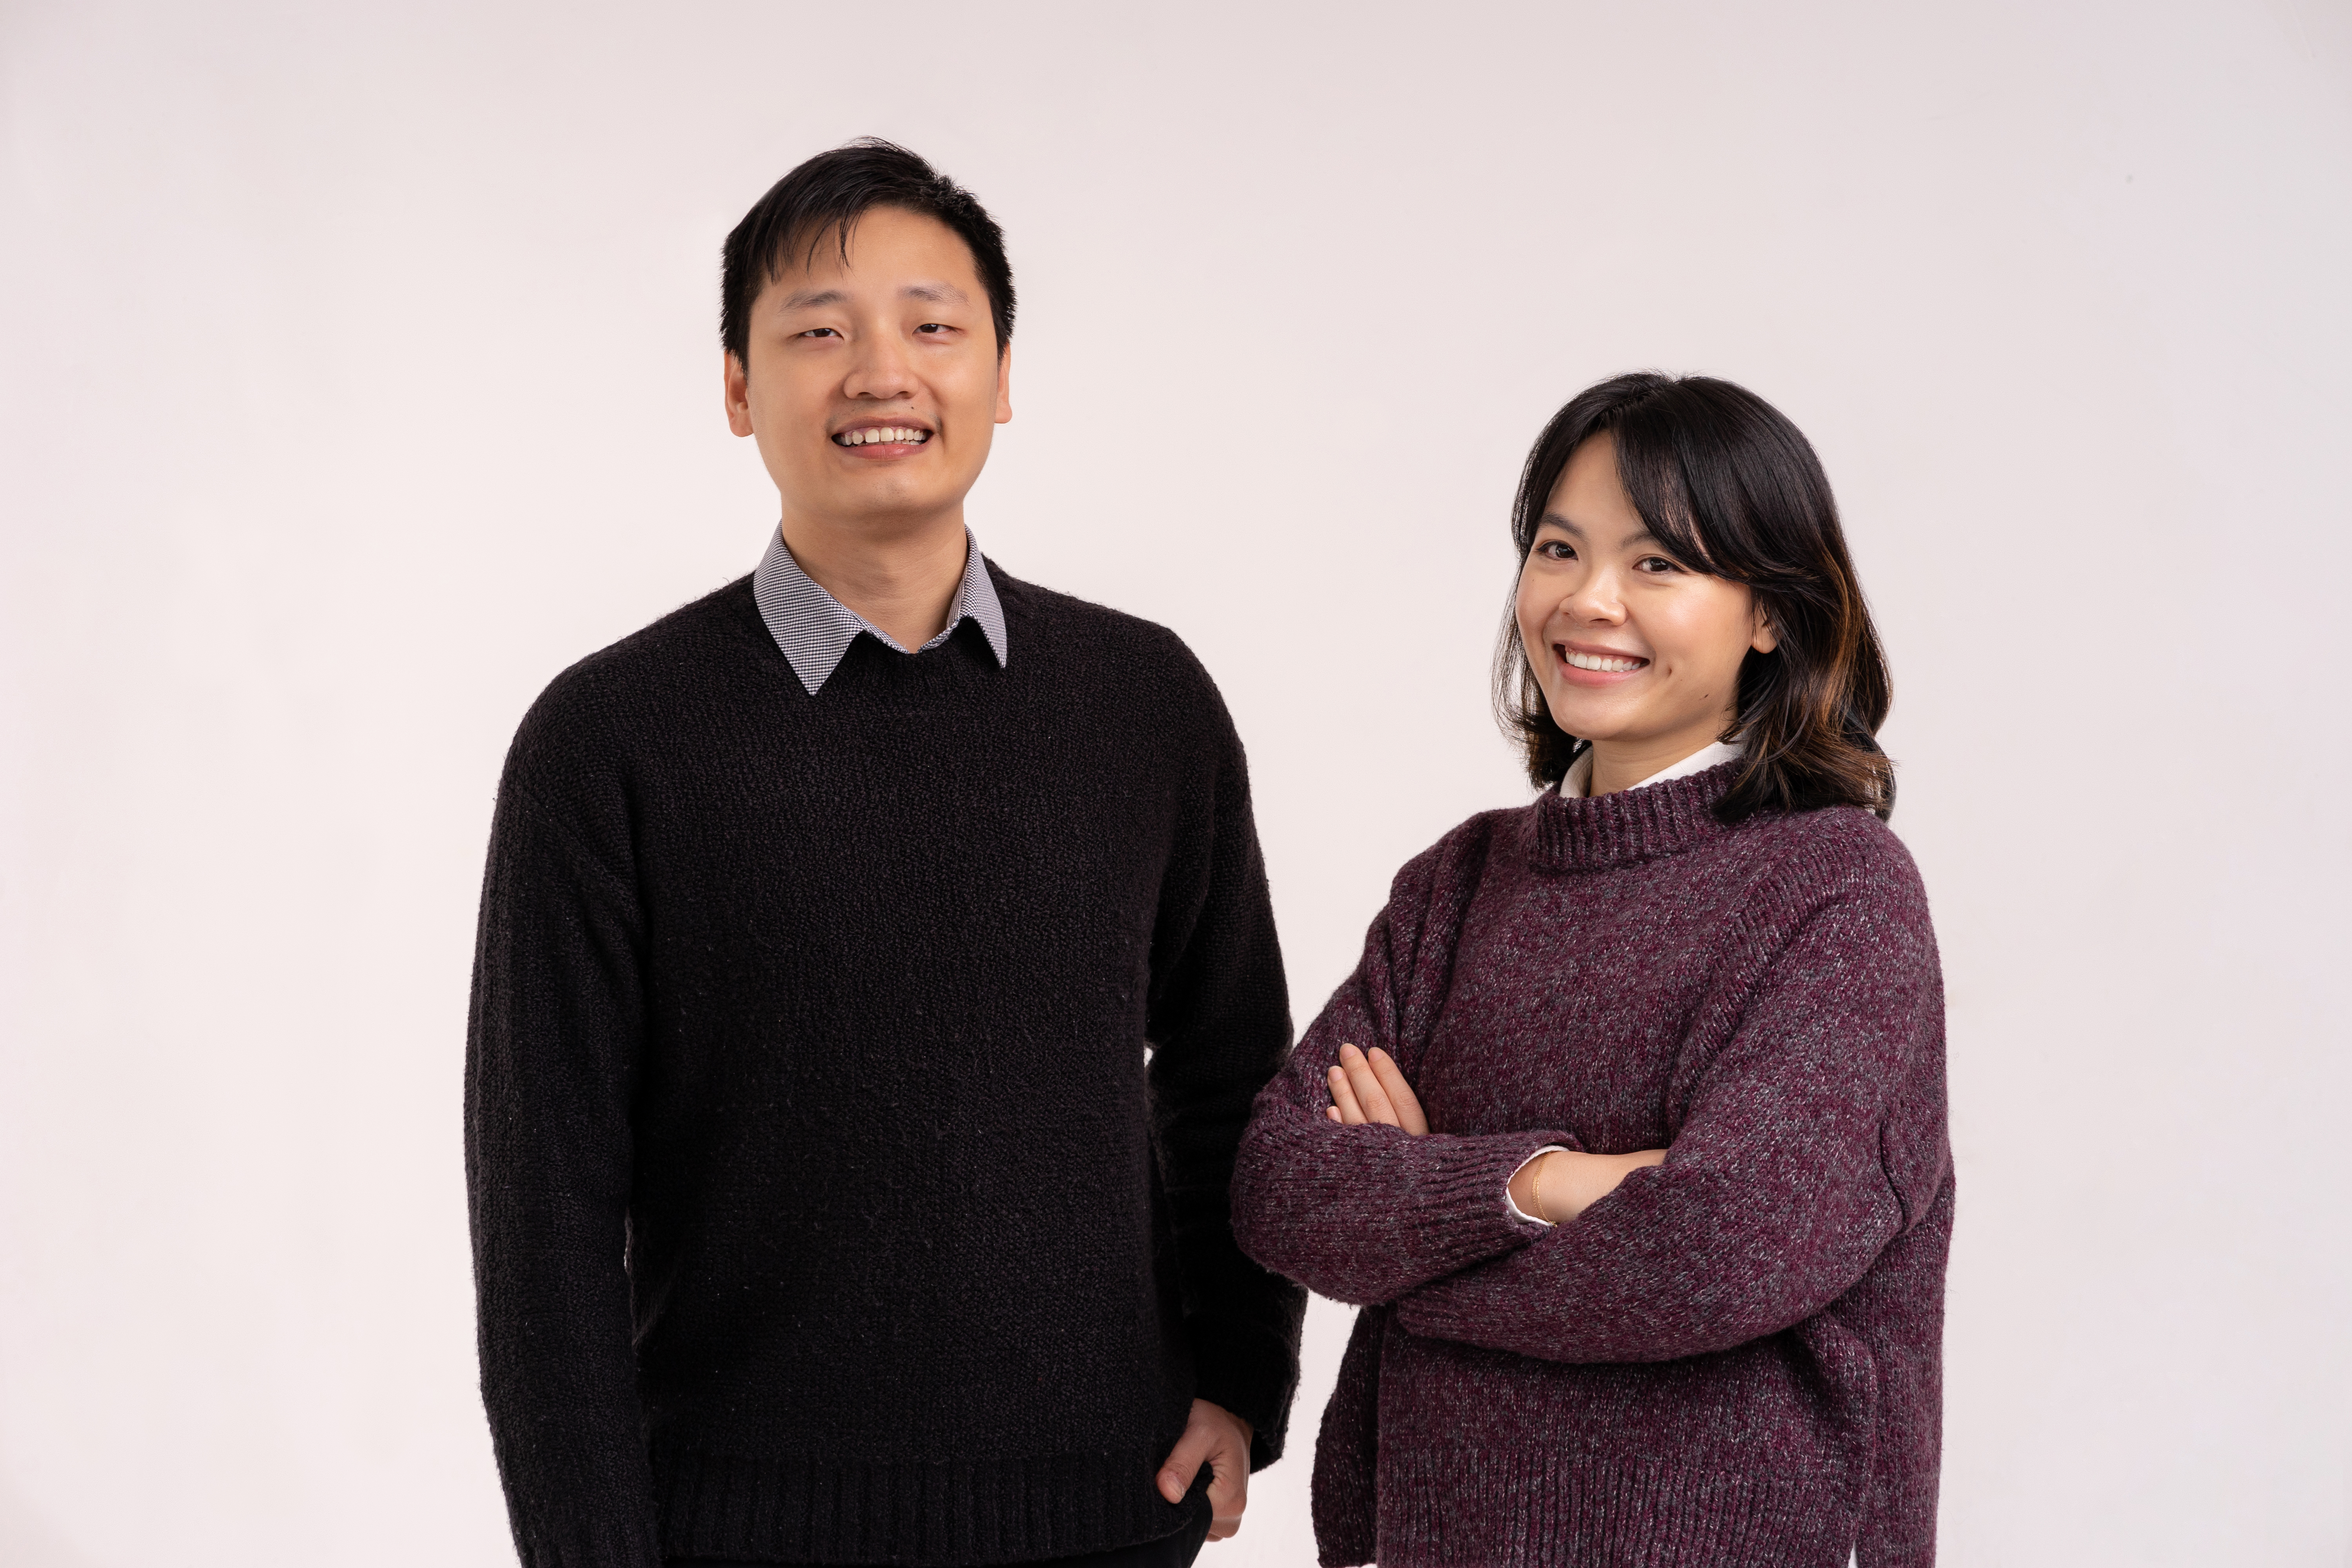 Aemi founders Hieu Nguyen and Kim Vu